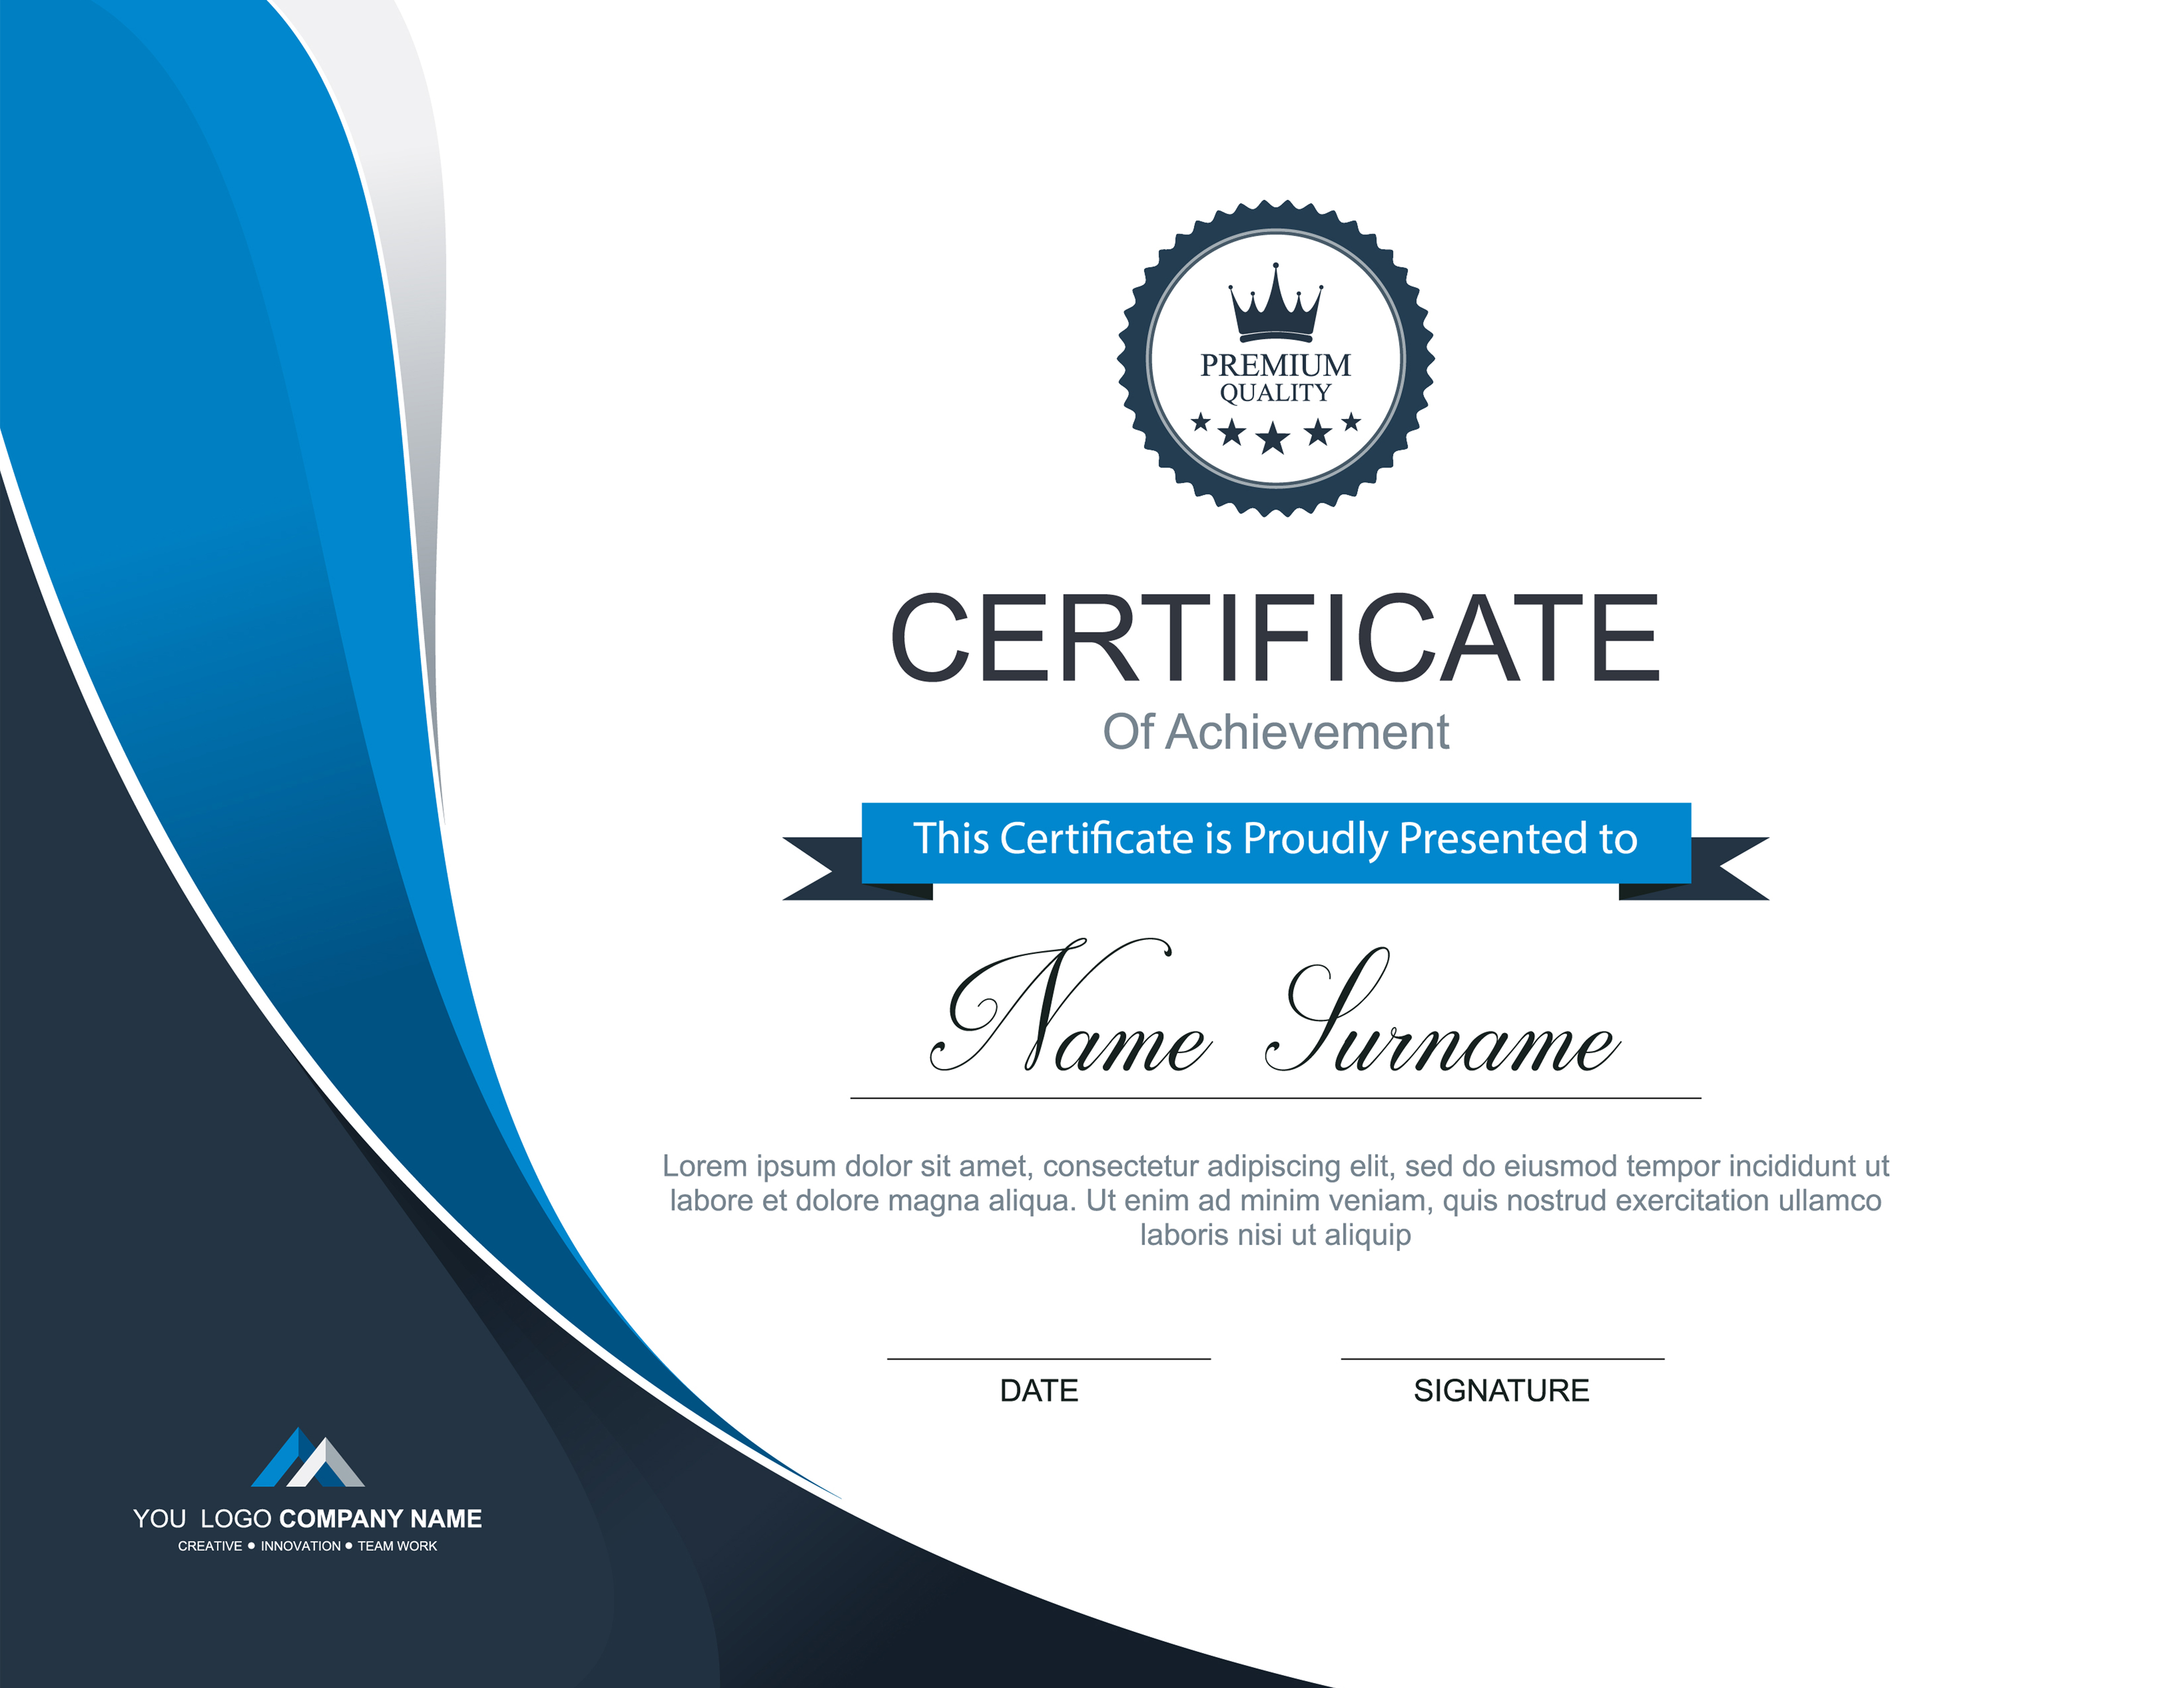 Download Vector certificate template - Download Free Vectors, Clipart Graphics & Vector Art